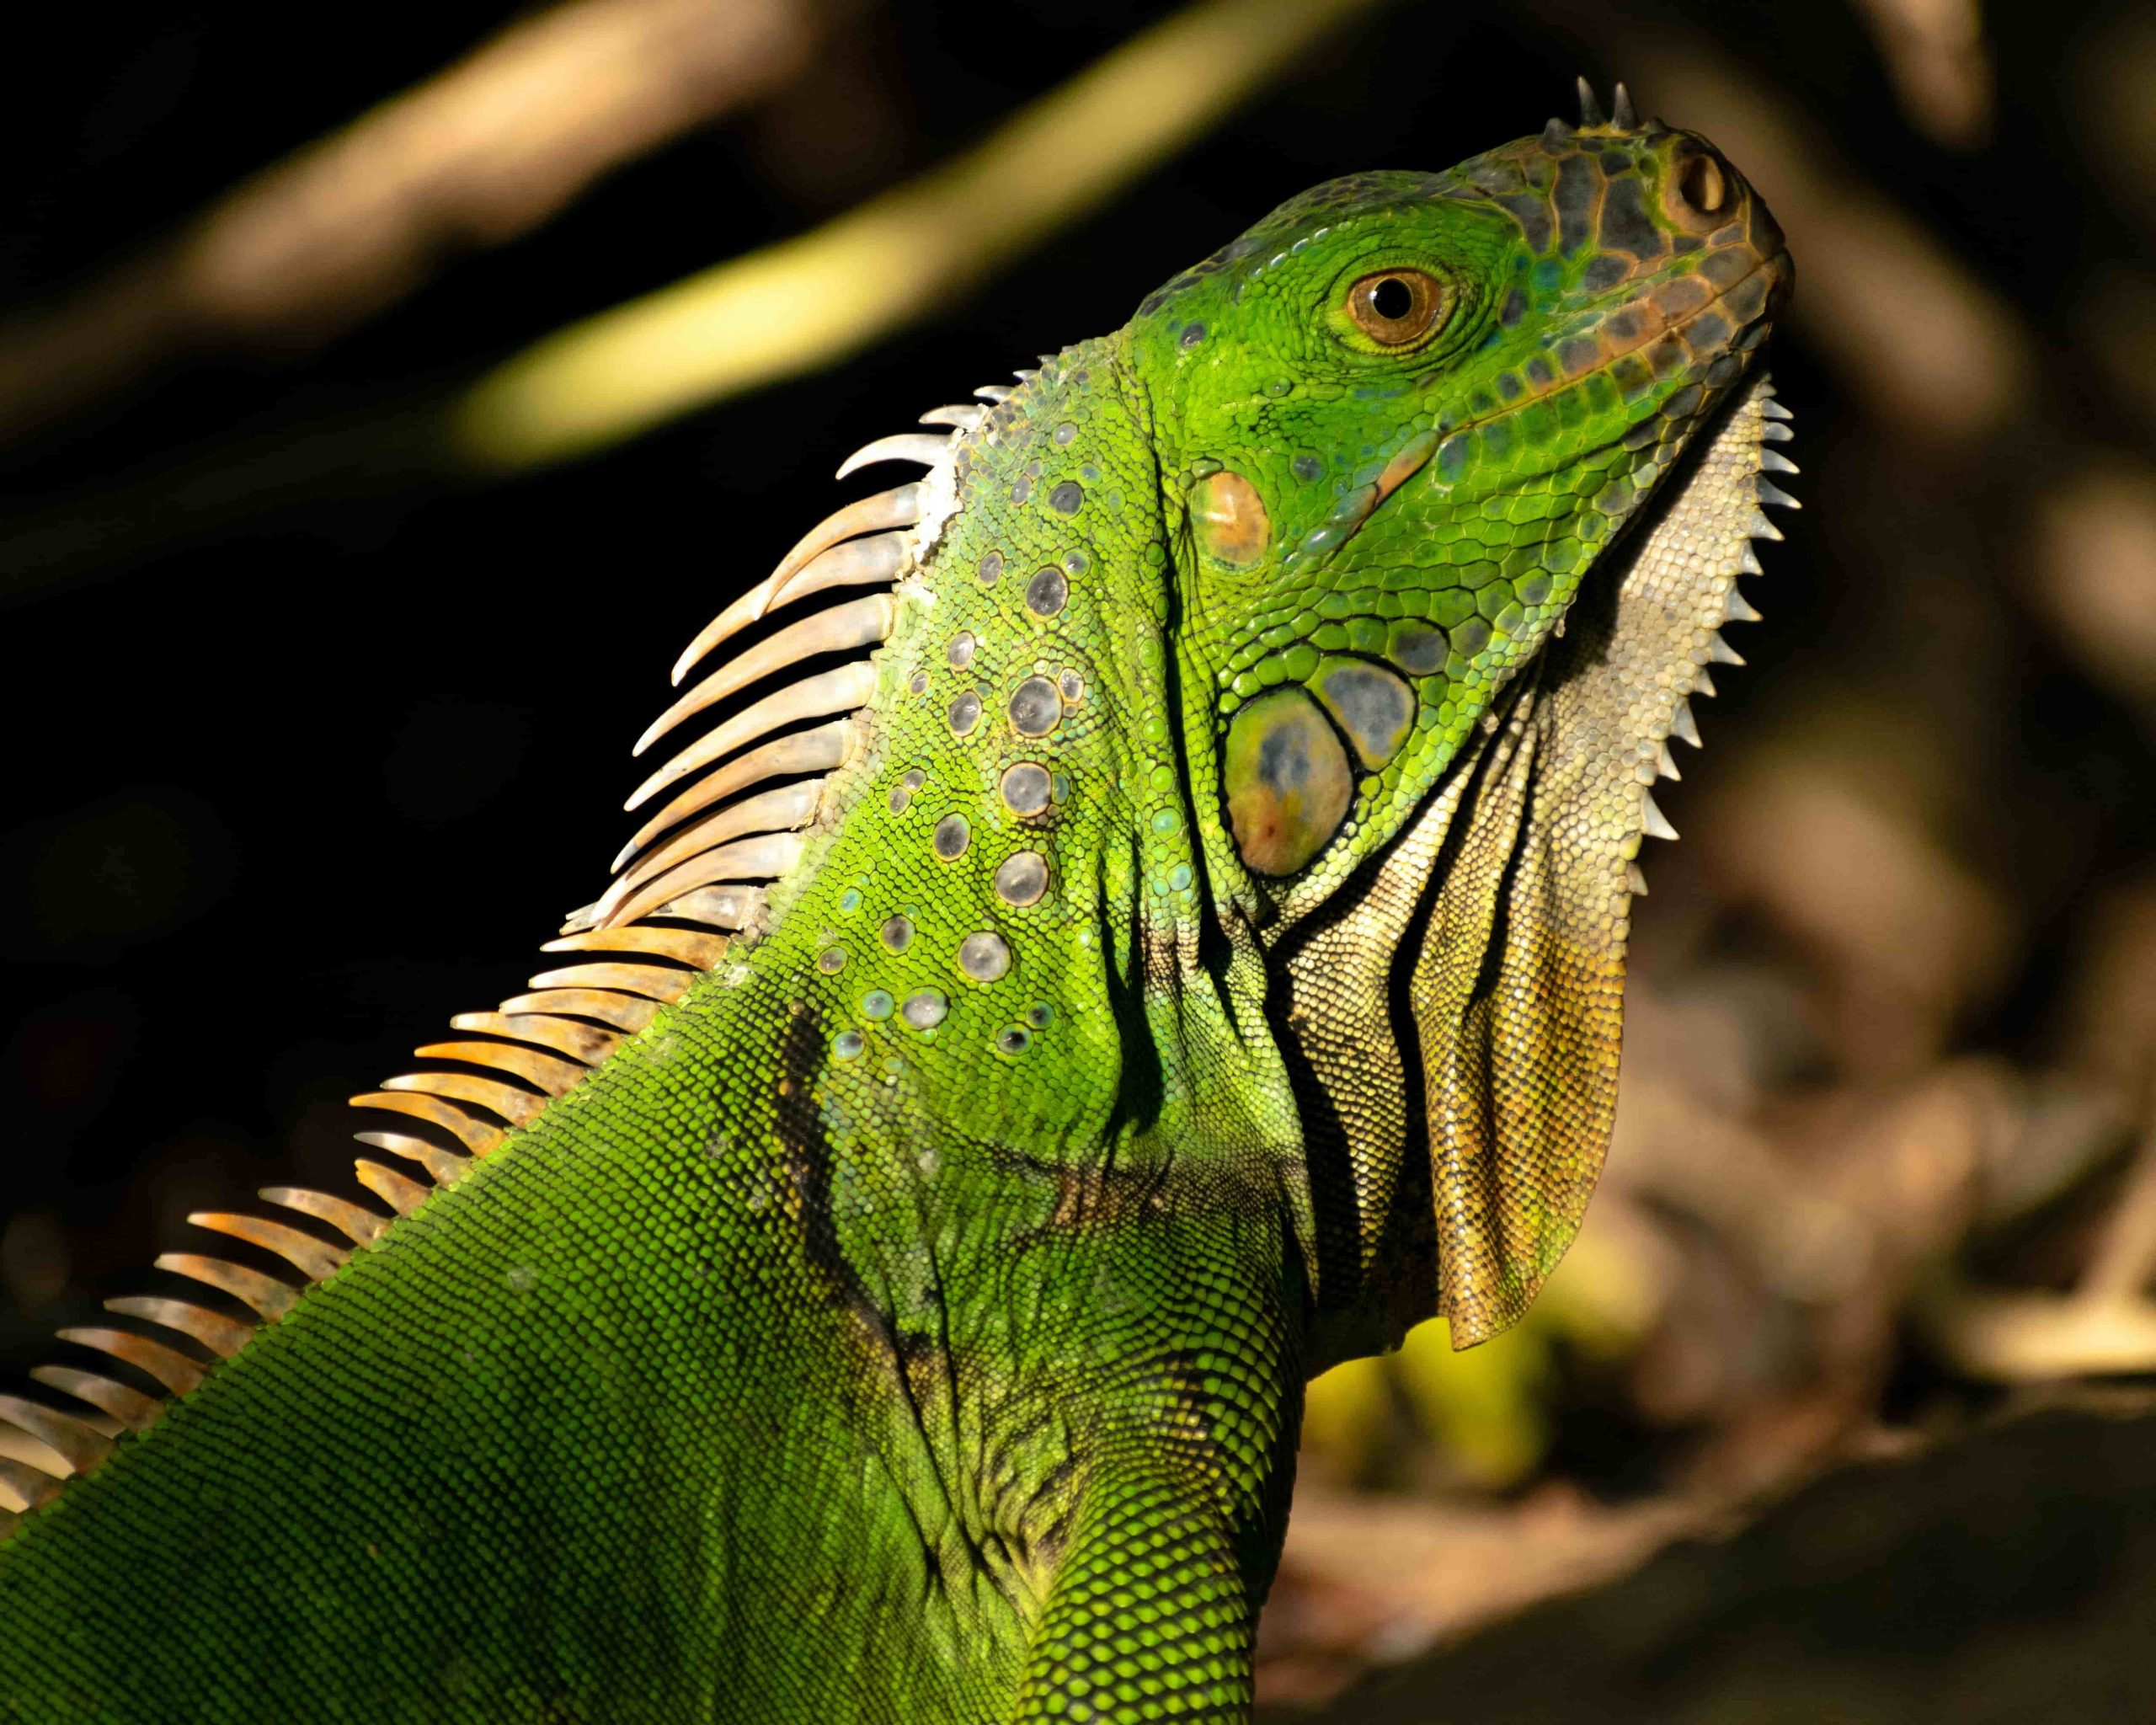 Cozumel has a surprising array of wildlife including a gecko